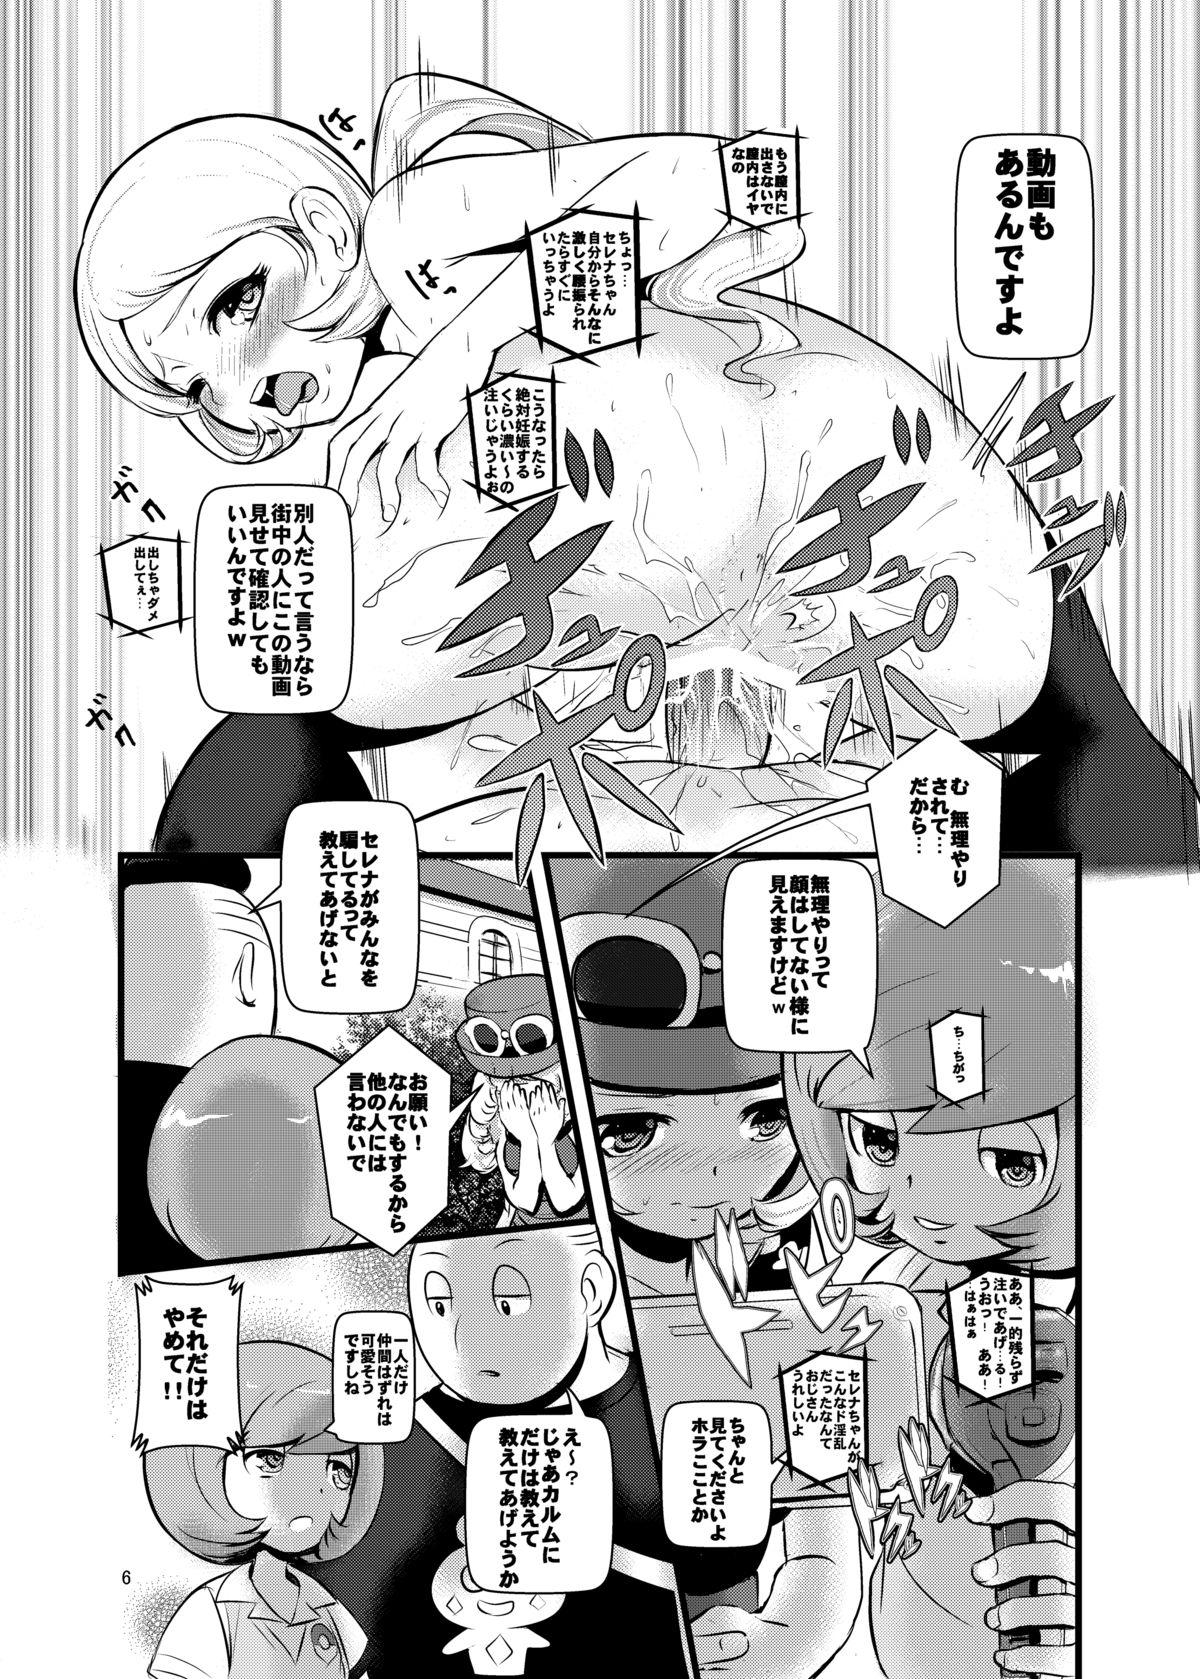 Puta HAKOIRI MUSUME - Pokemon Cameltoe - Page 5